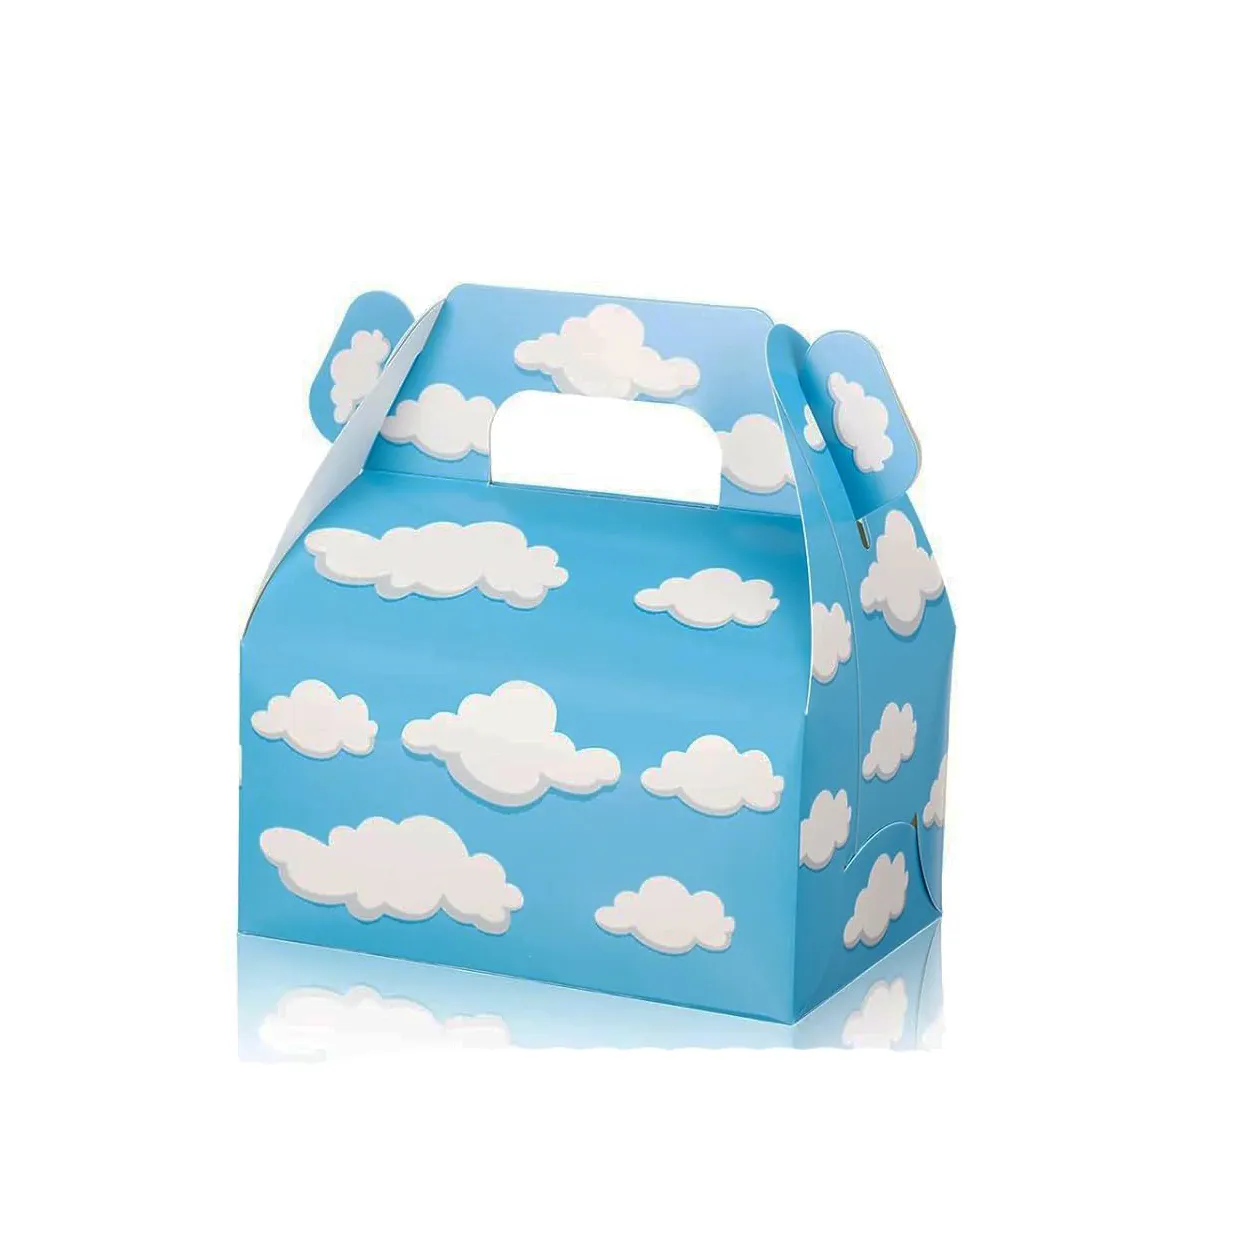 Venta al por mayor de suministros de fiesta de cumpleaños para niños envoltura de cartón caramelo azul blanco nube patrón de diseño portátil para niños caja de regalo conjunto